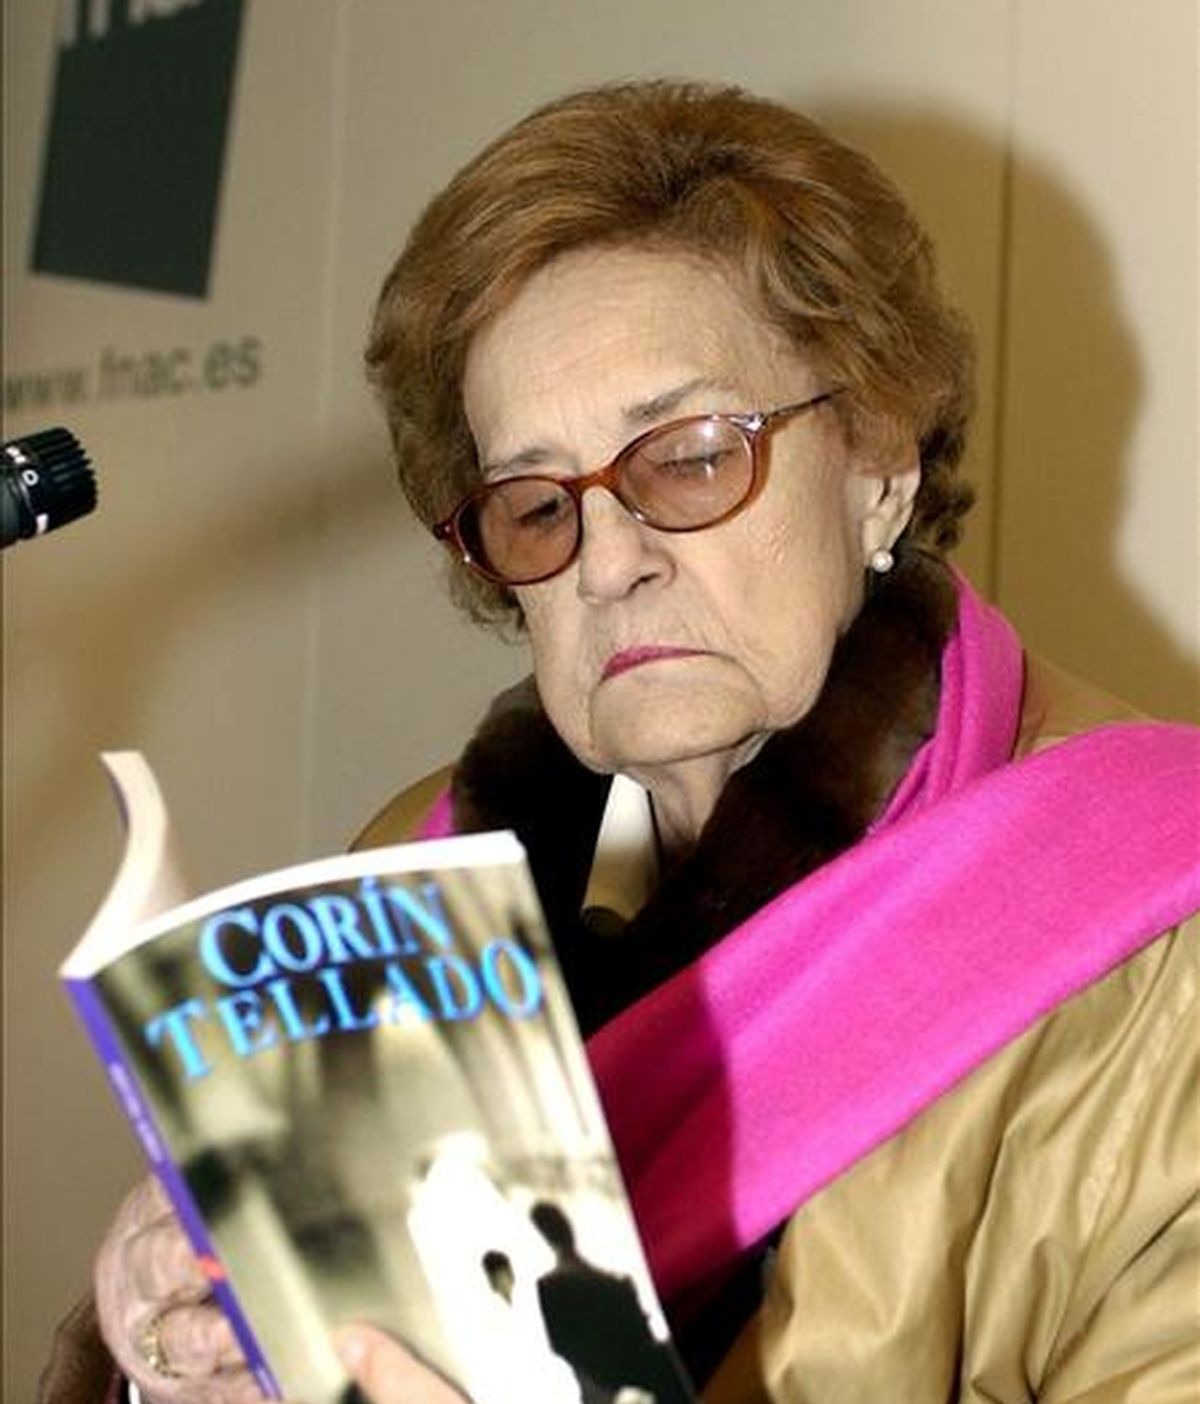 La escritora María del Socorro Tellado López, conocida como Corín Tellado, ha muerto esta madrugada en el Hospital de Cabueñes, en Gijón. Vídeo: ATLAS